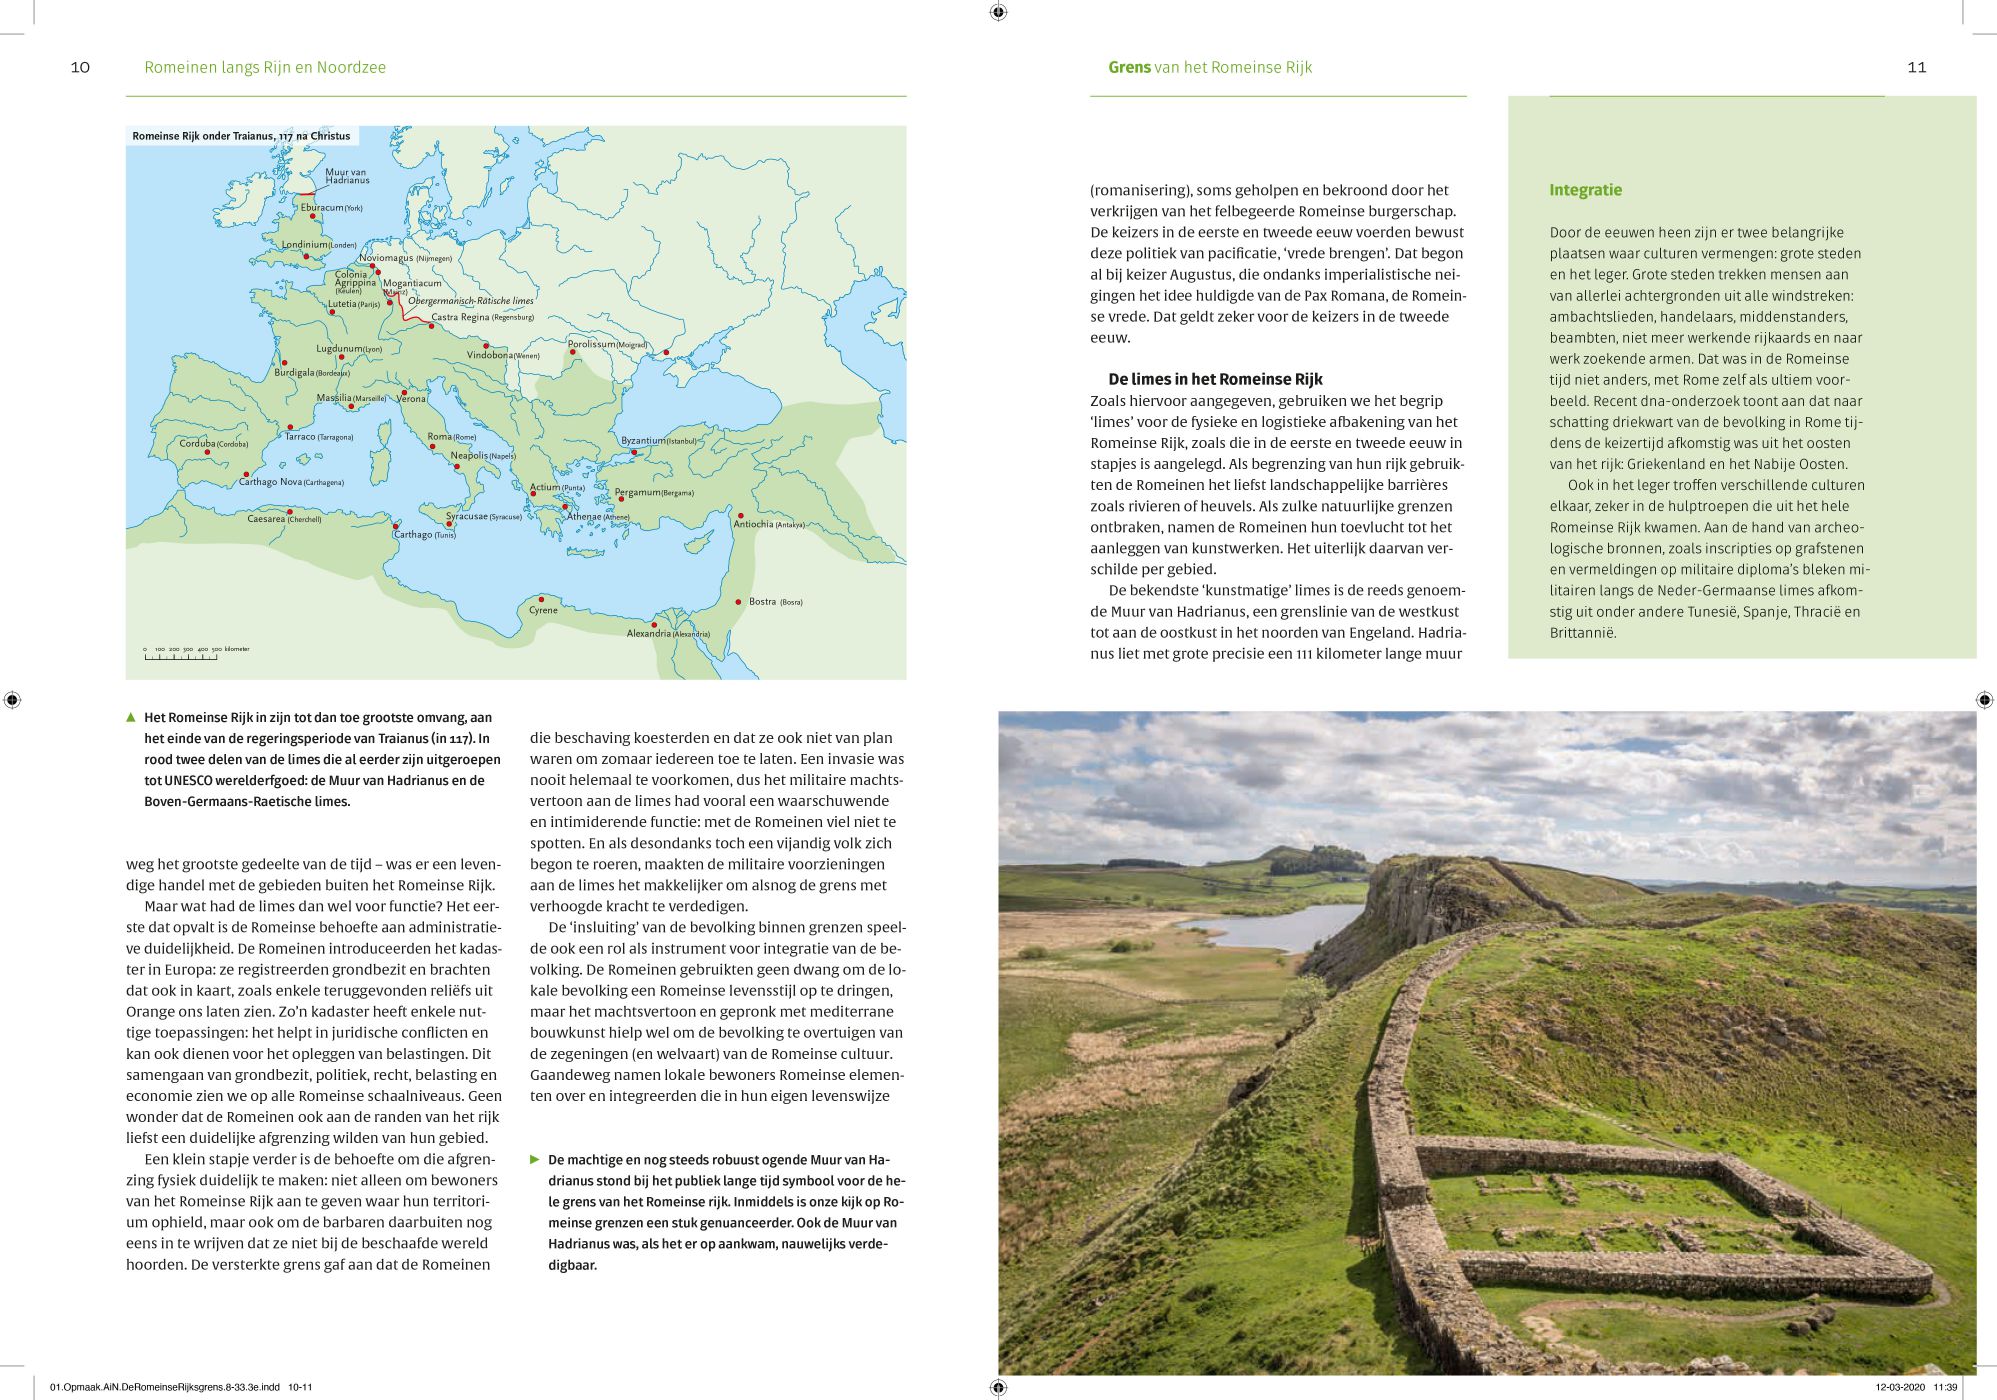 Inkijkexemplaar van het boek: <em>Romeinen langs Rijn en Noordzee. De limes in Nederland</em> - © Uitgeverij Matrijs